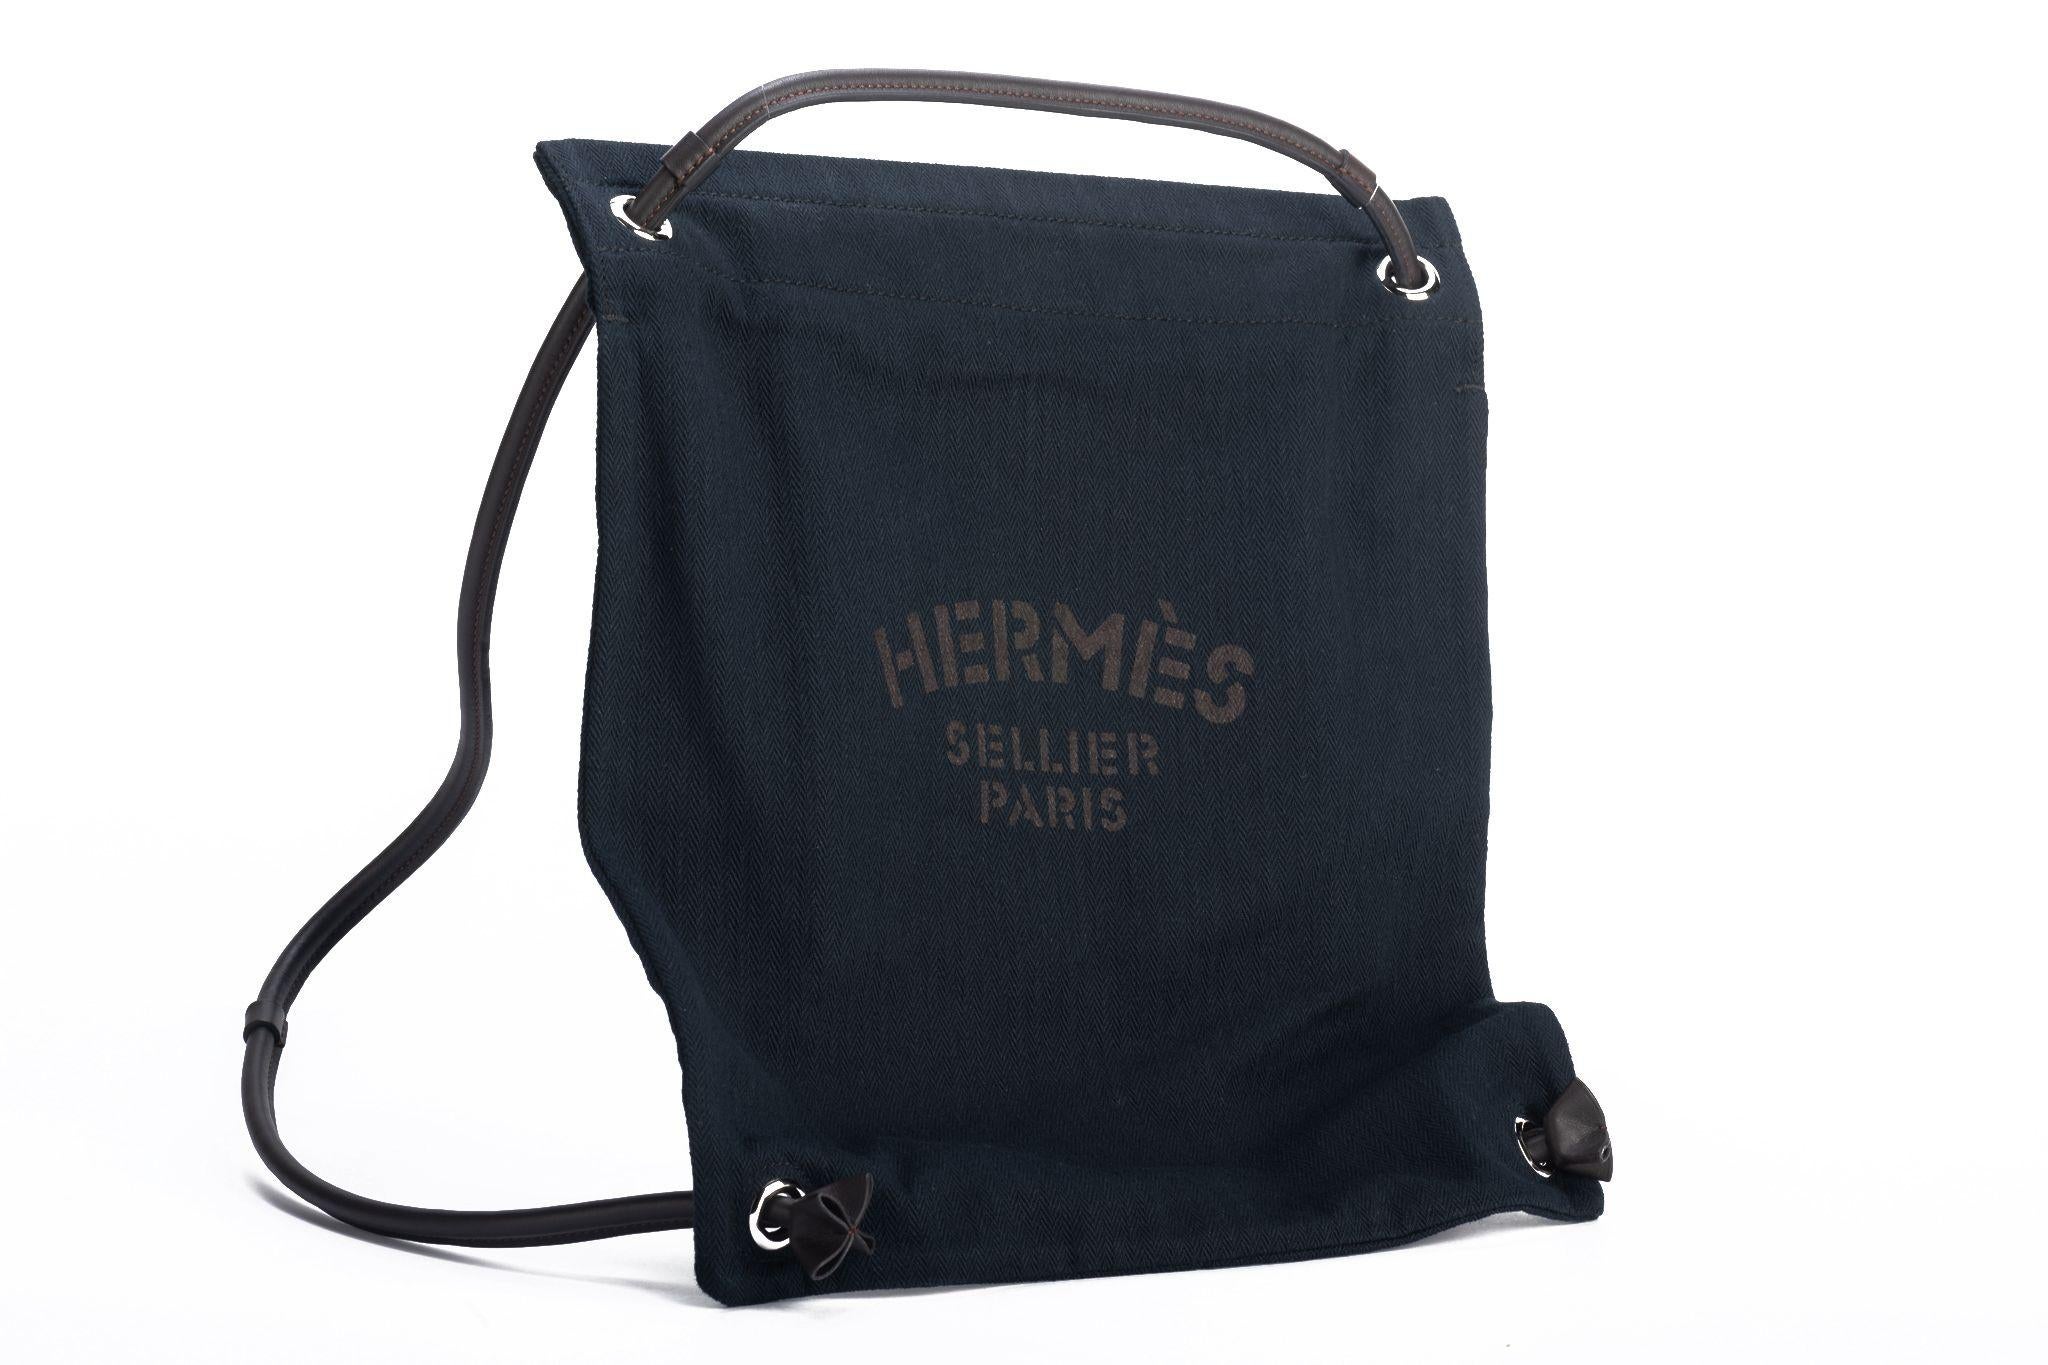 Hermes schwarzer Fischgräten-Toilettenbeutel mit schwarzen Lederriemen. Can als Umhängetasche oder als Rucksack getragen werden. Schulterhöhe 17